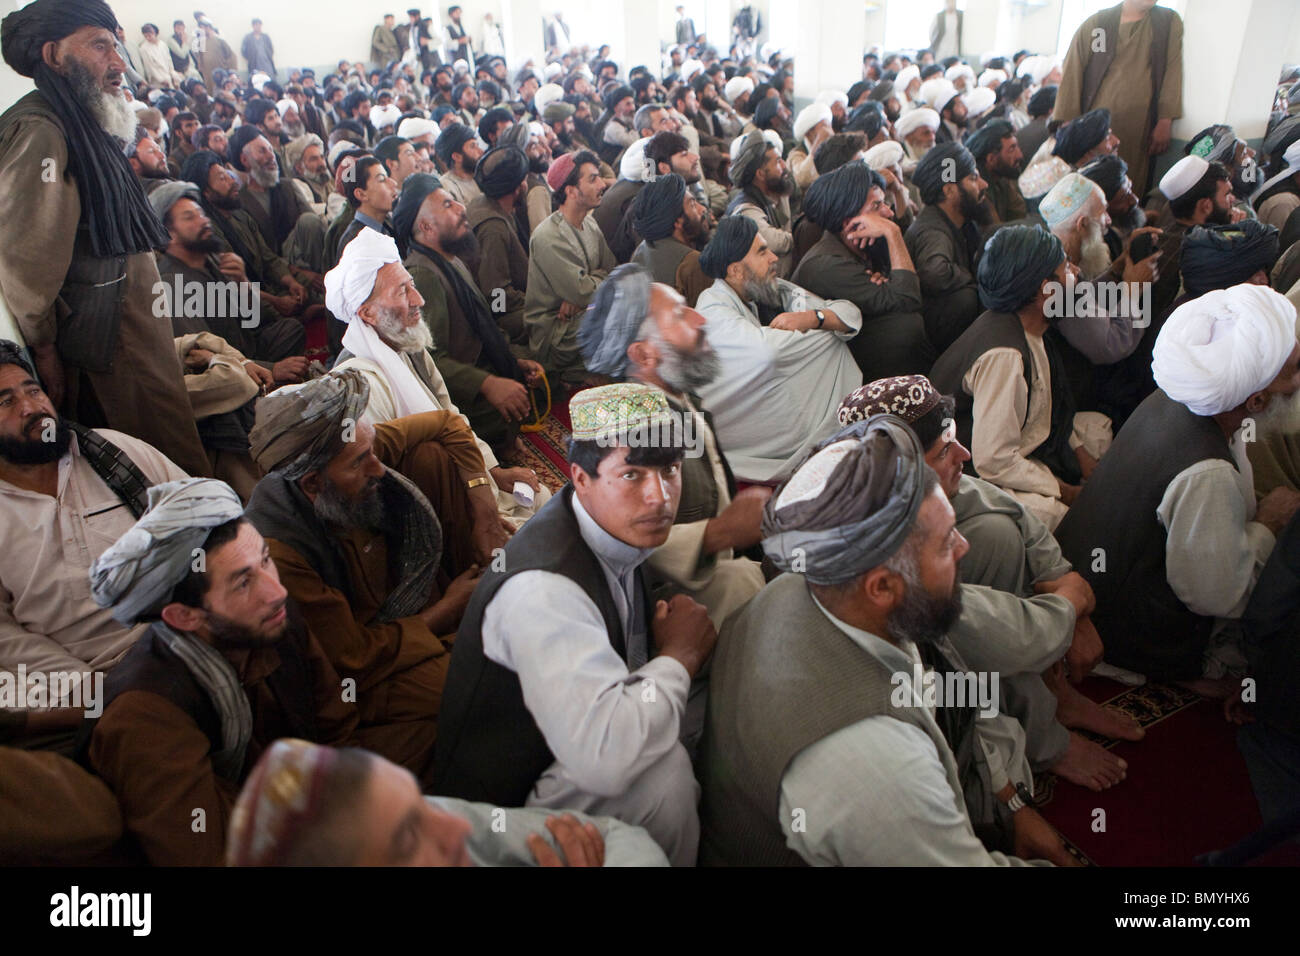 Pashtun visiter la mosquée de vendredi à prier dans l'Uruzgan, Afghanistan Banque D'Images